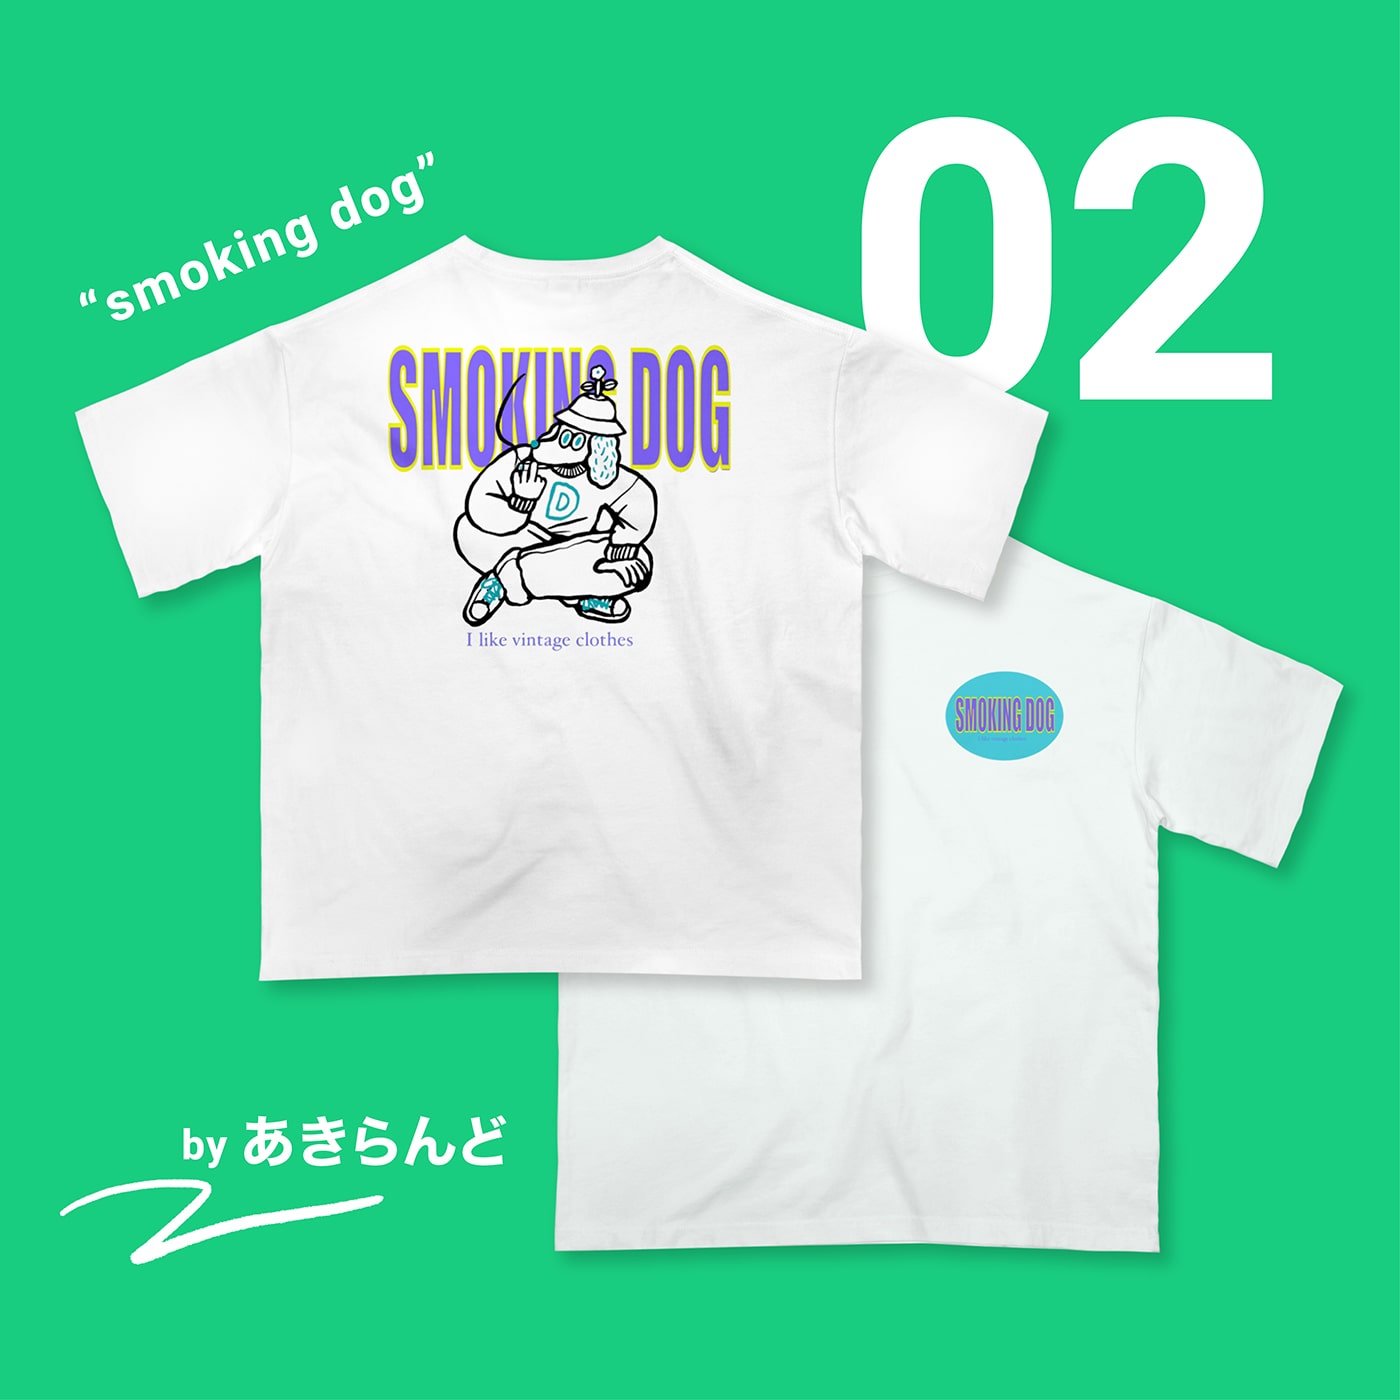 02 “smoking dog” by あきらんど